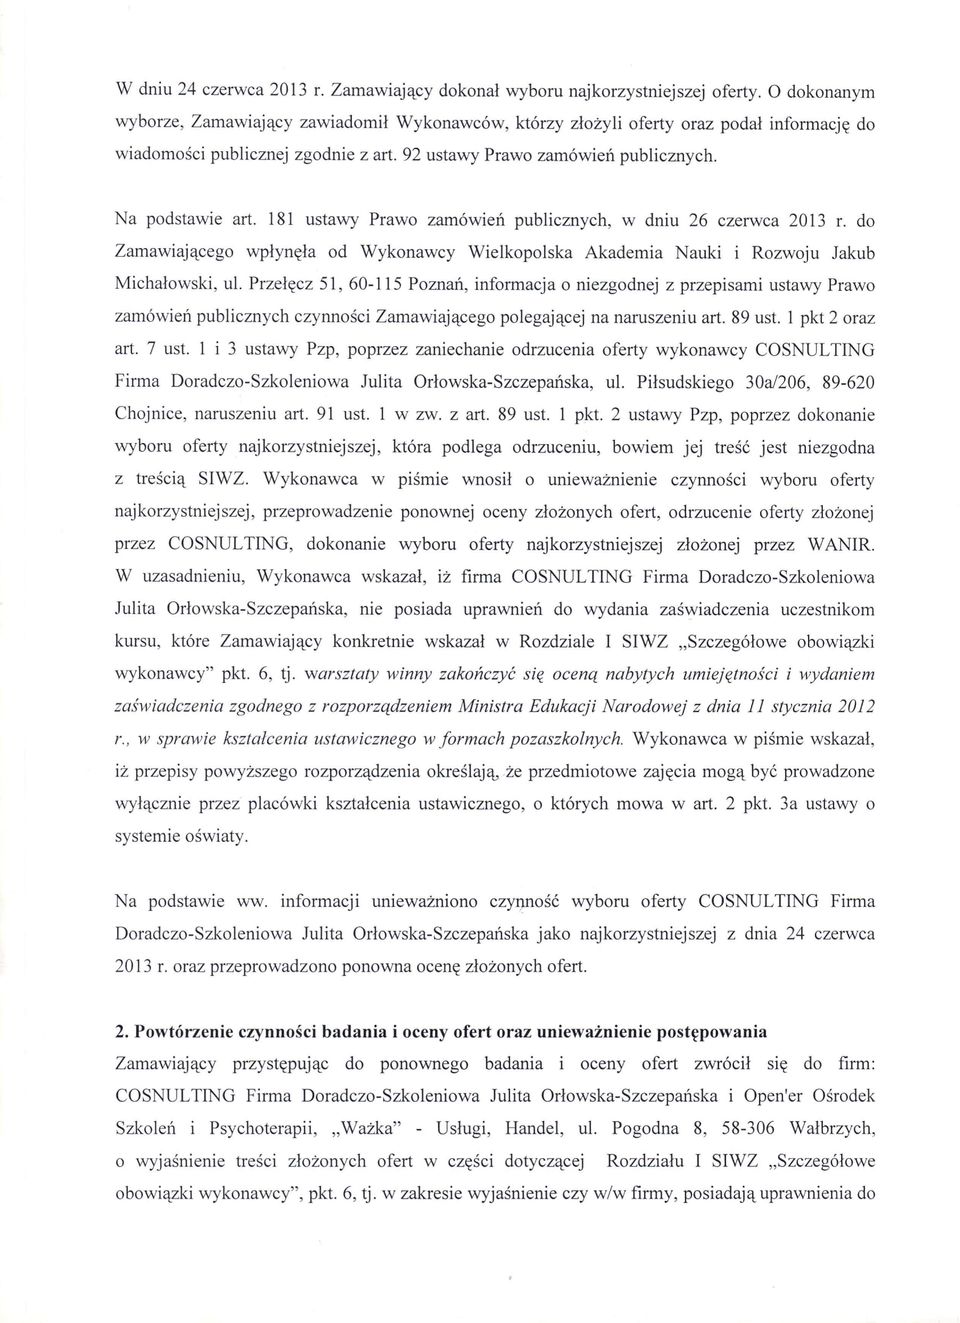 181 ustawy Prawo zamówień publicznych, w dniu 26 czerwca 2013 r. do Zamawiającego wpłynęła od Wykonawcy Wielkopolska Akademia Nauki i Rozwoju Jakub Michałowski, ul.